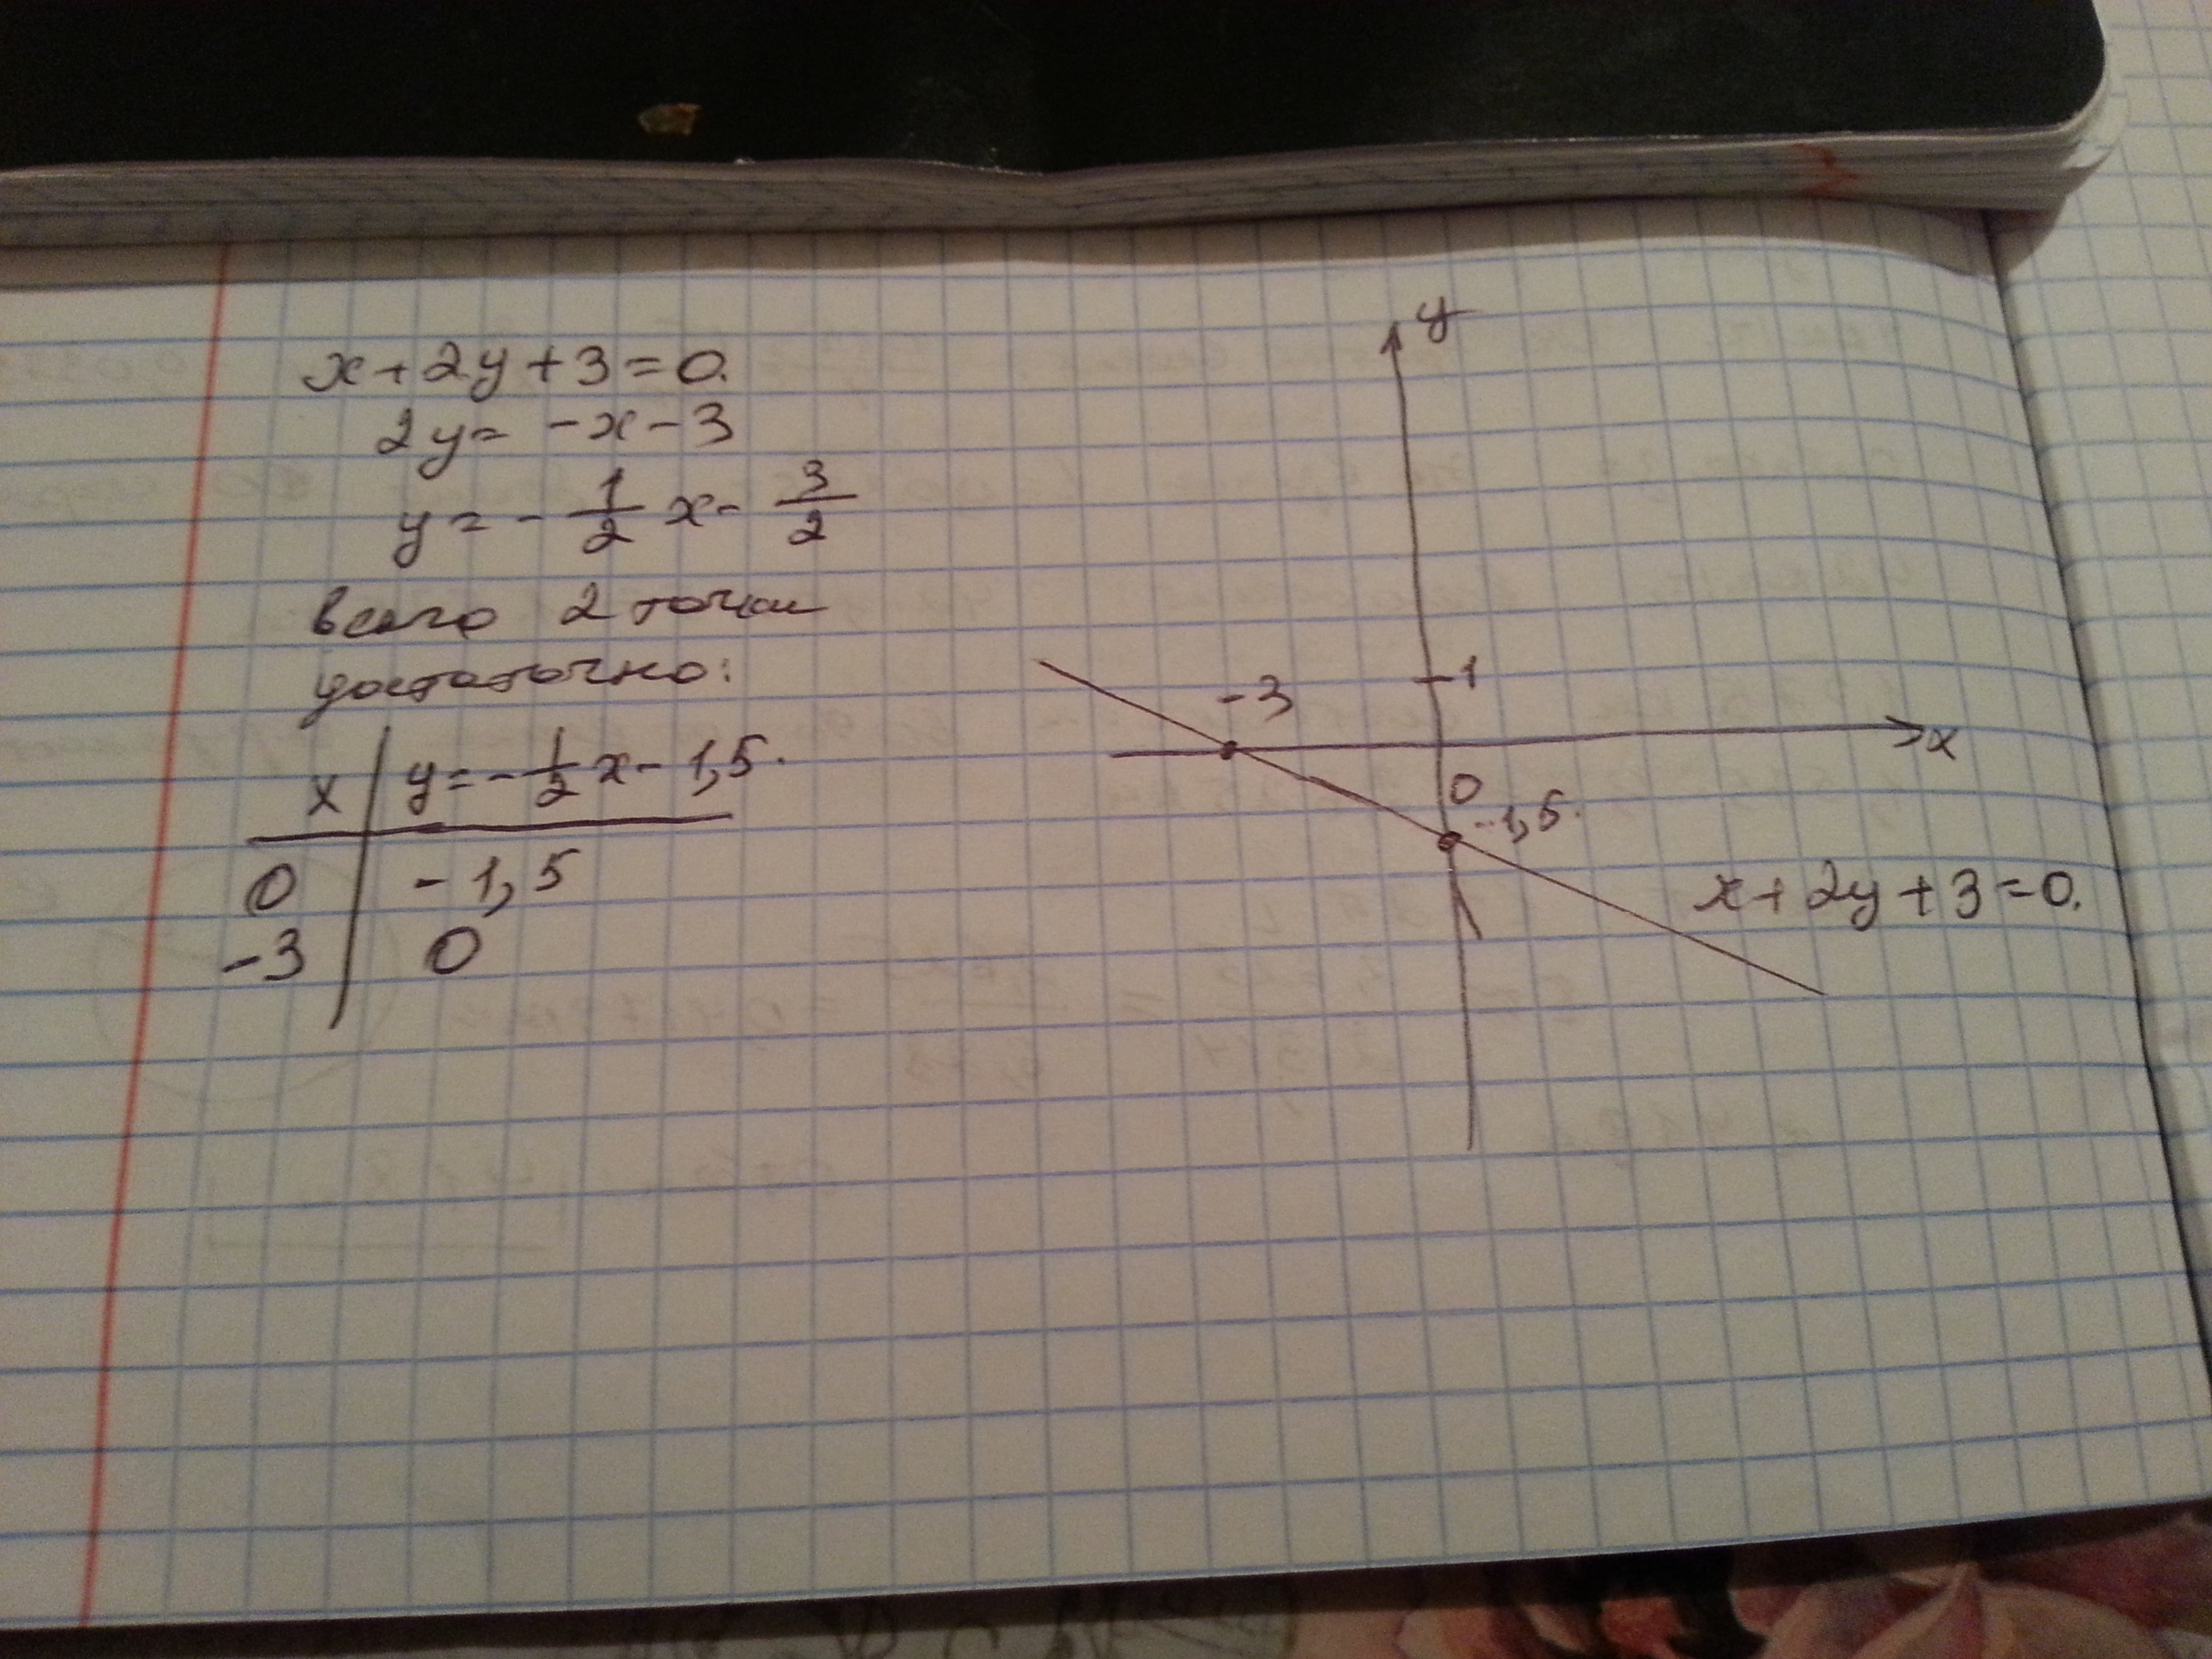 Х 4у 3 найти ответы. Построить прямую заданную уравнением. 3х+2=0. Начертите прямую заданную уравнением. Начертите прямую заданную уравнением у 3 х -2.